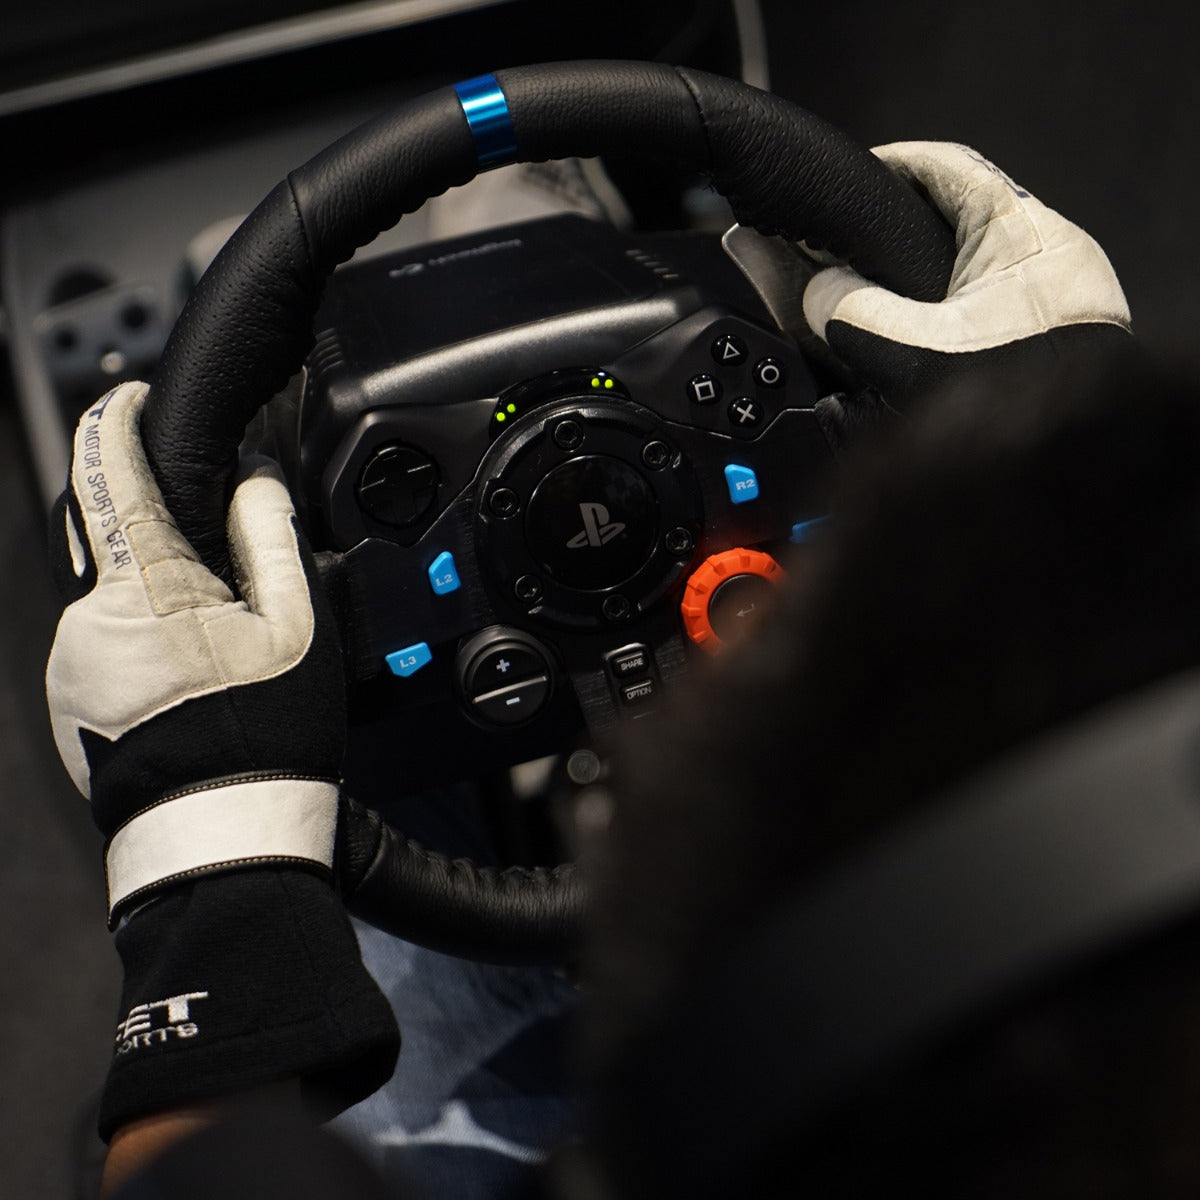 Logitech G29 Driving Force - Conjunto de volante e pedais - com cabo - para Sony PlayStation 3, Sony PlayStation 4